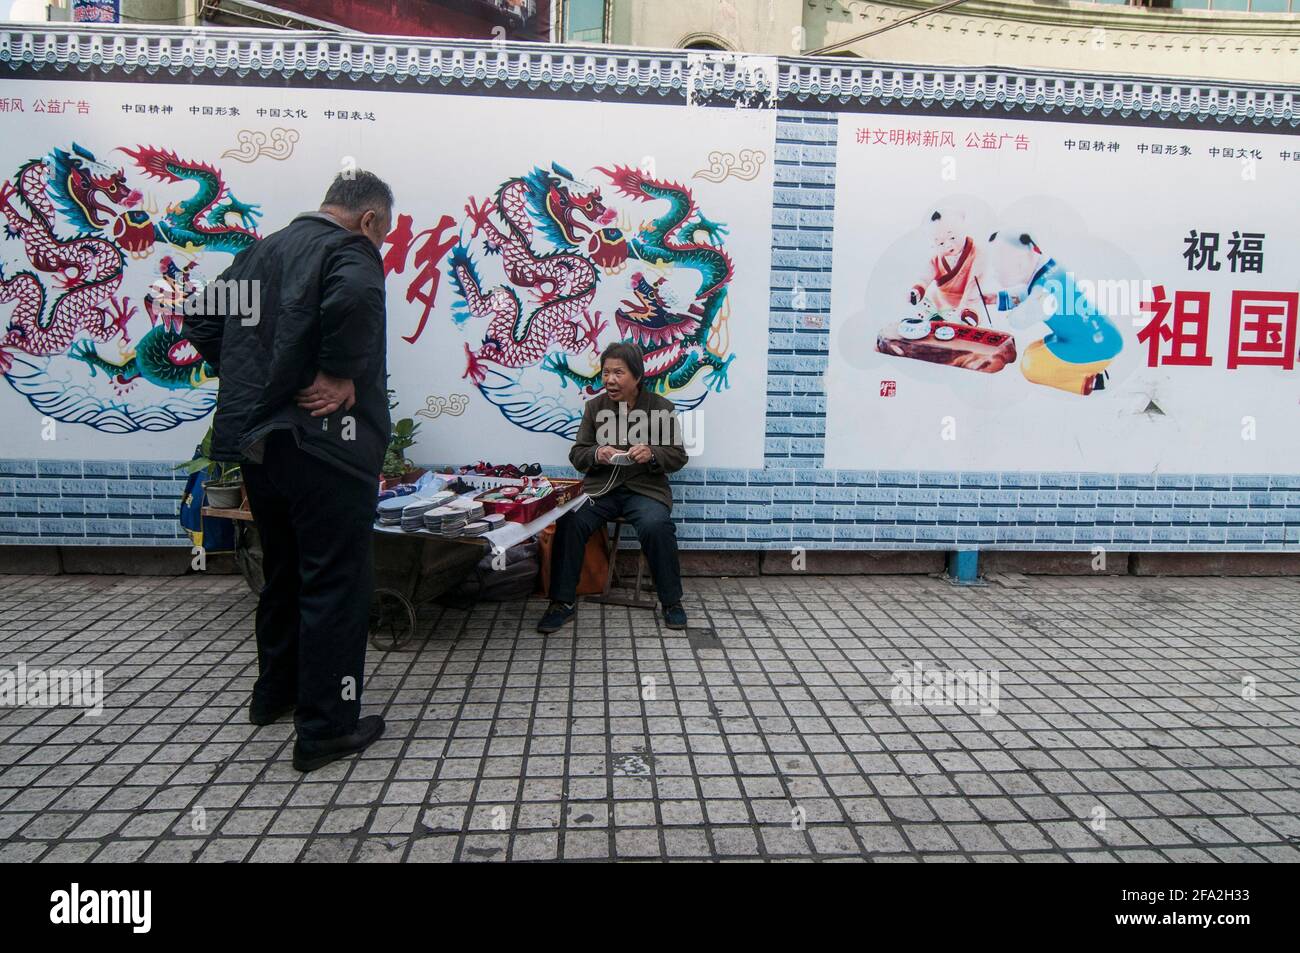 Una donna anziana chiacchiera con un uomo mentre siede infante di manifesti di propaganda su un muro dietro di lei, vendendo intarsi per scarpe e fissando il tessuto per le strade di Urumqi a Xinjiang, Cina, RPC. © Time-Snap Foto Stock